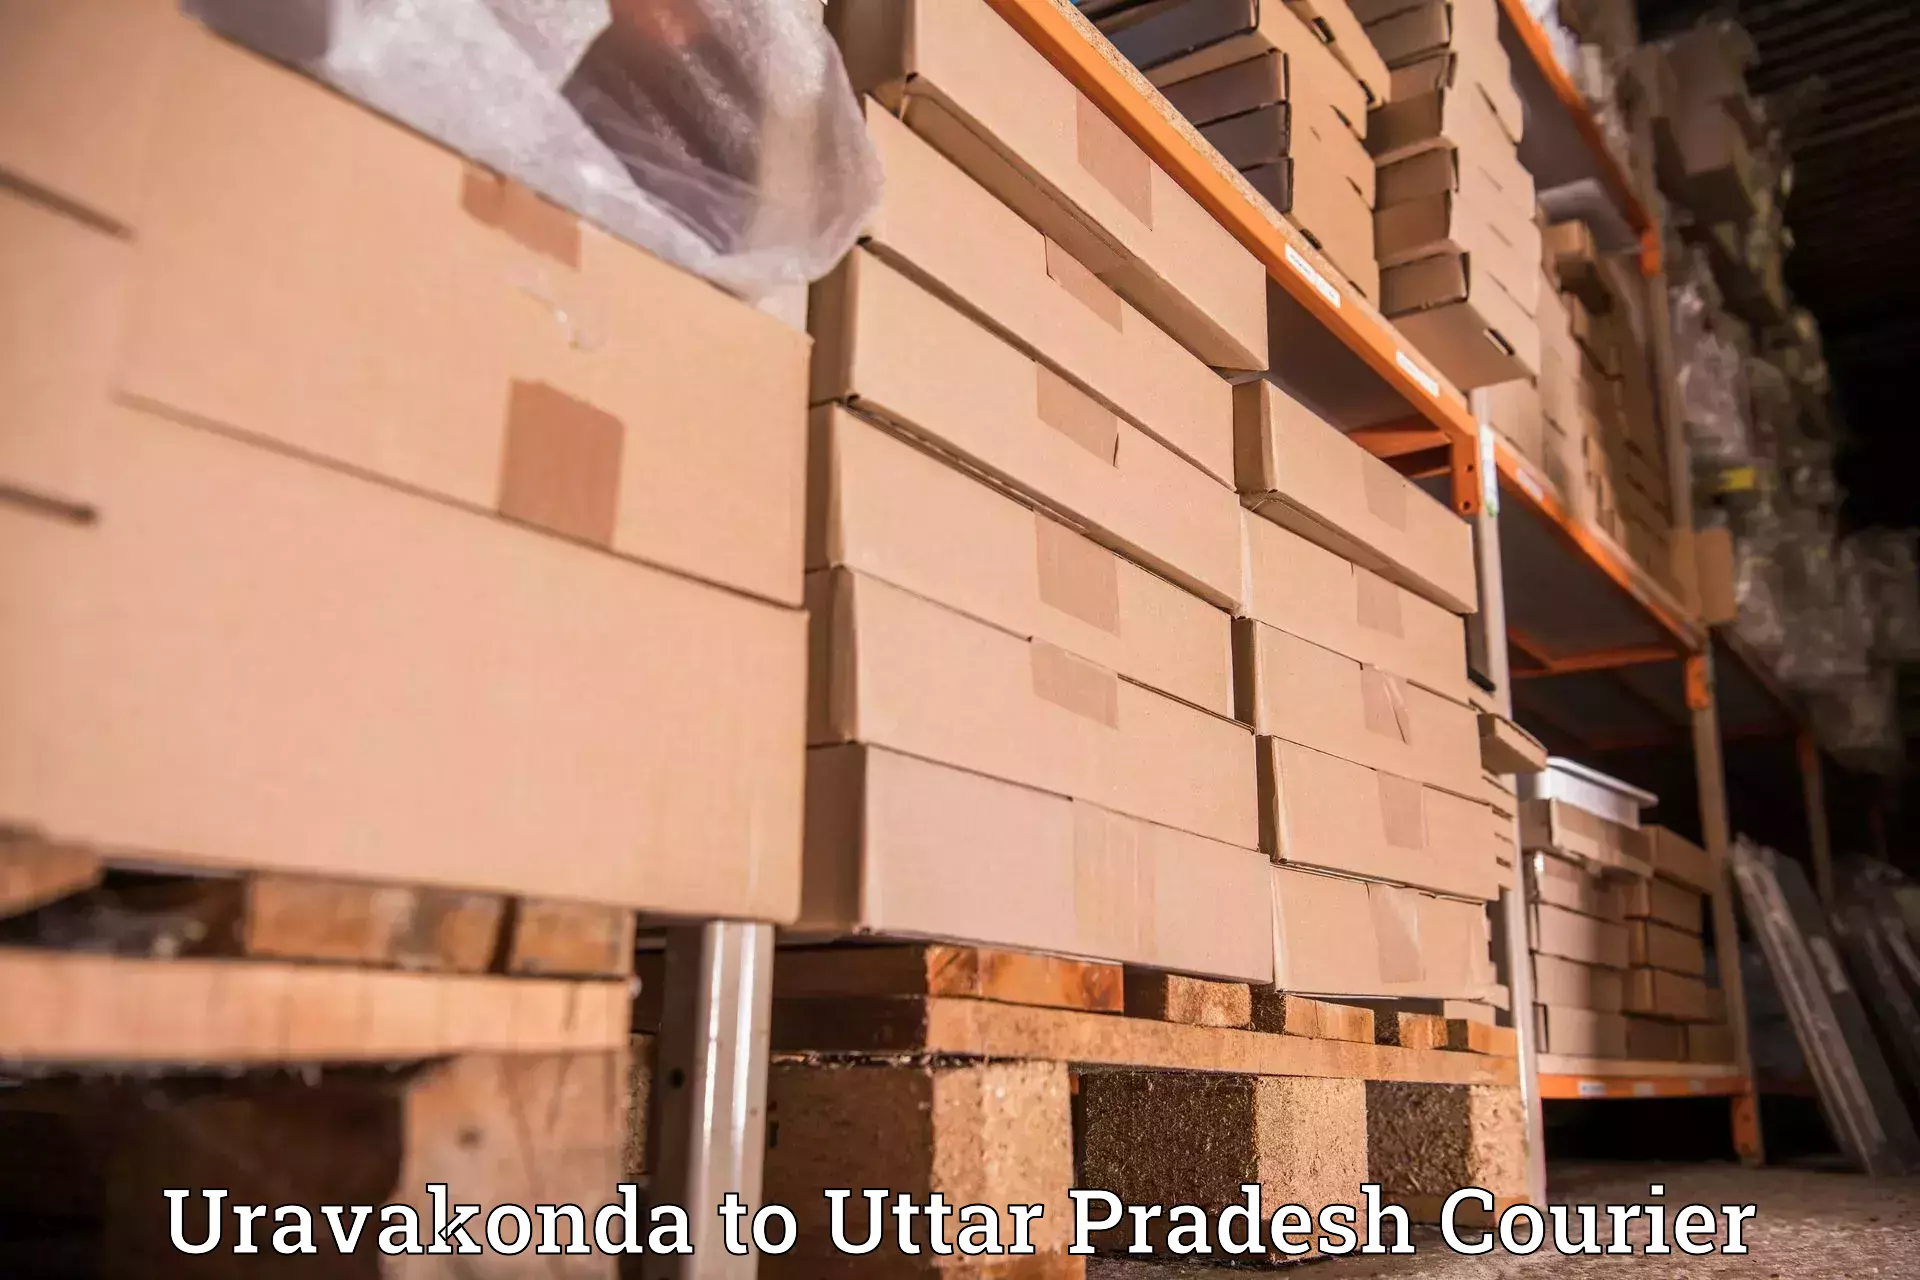 Customer-centric shipping Uravakonda to Basti